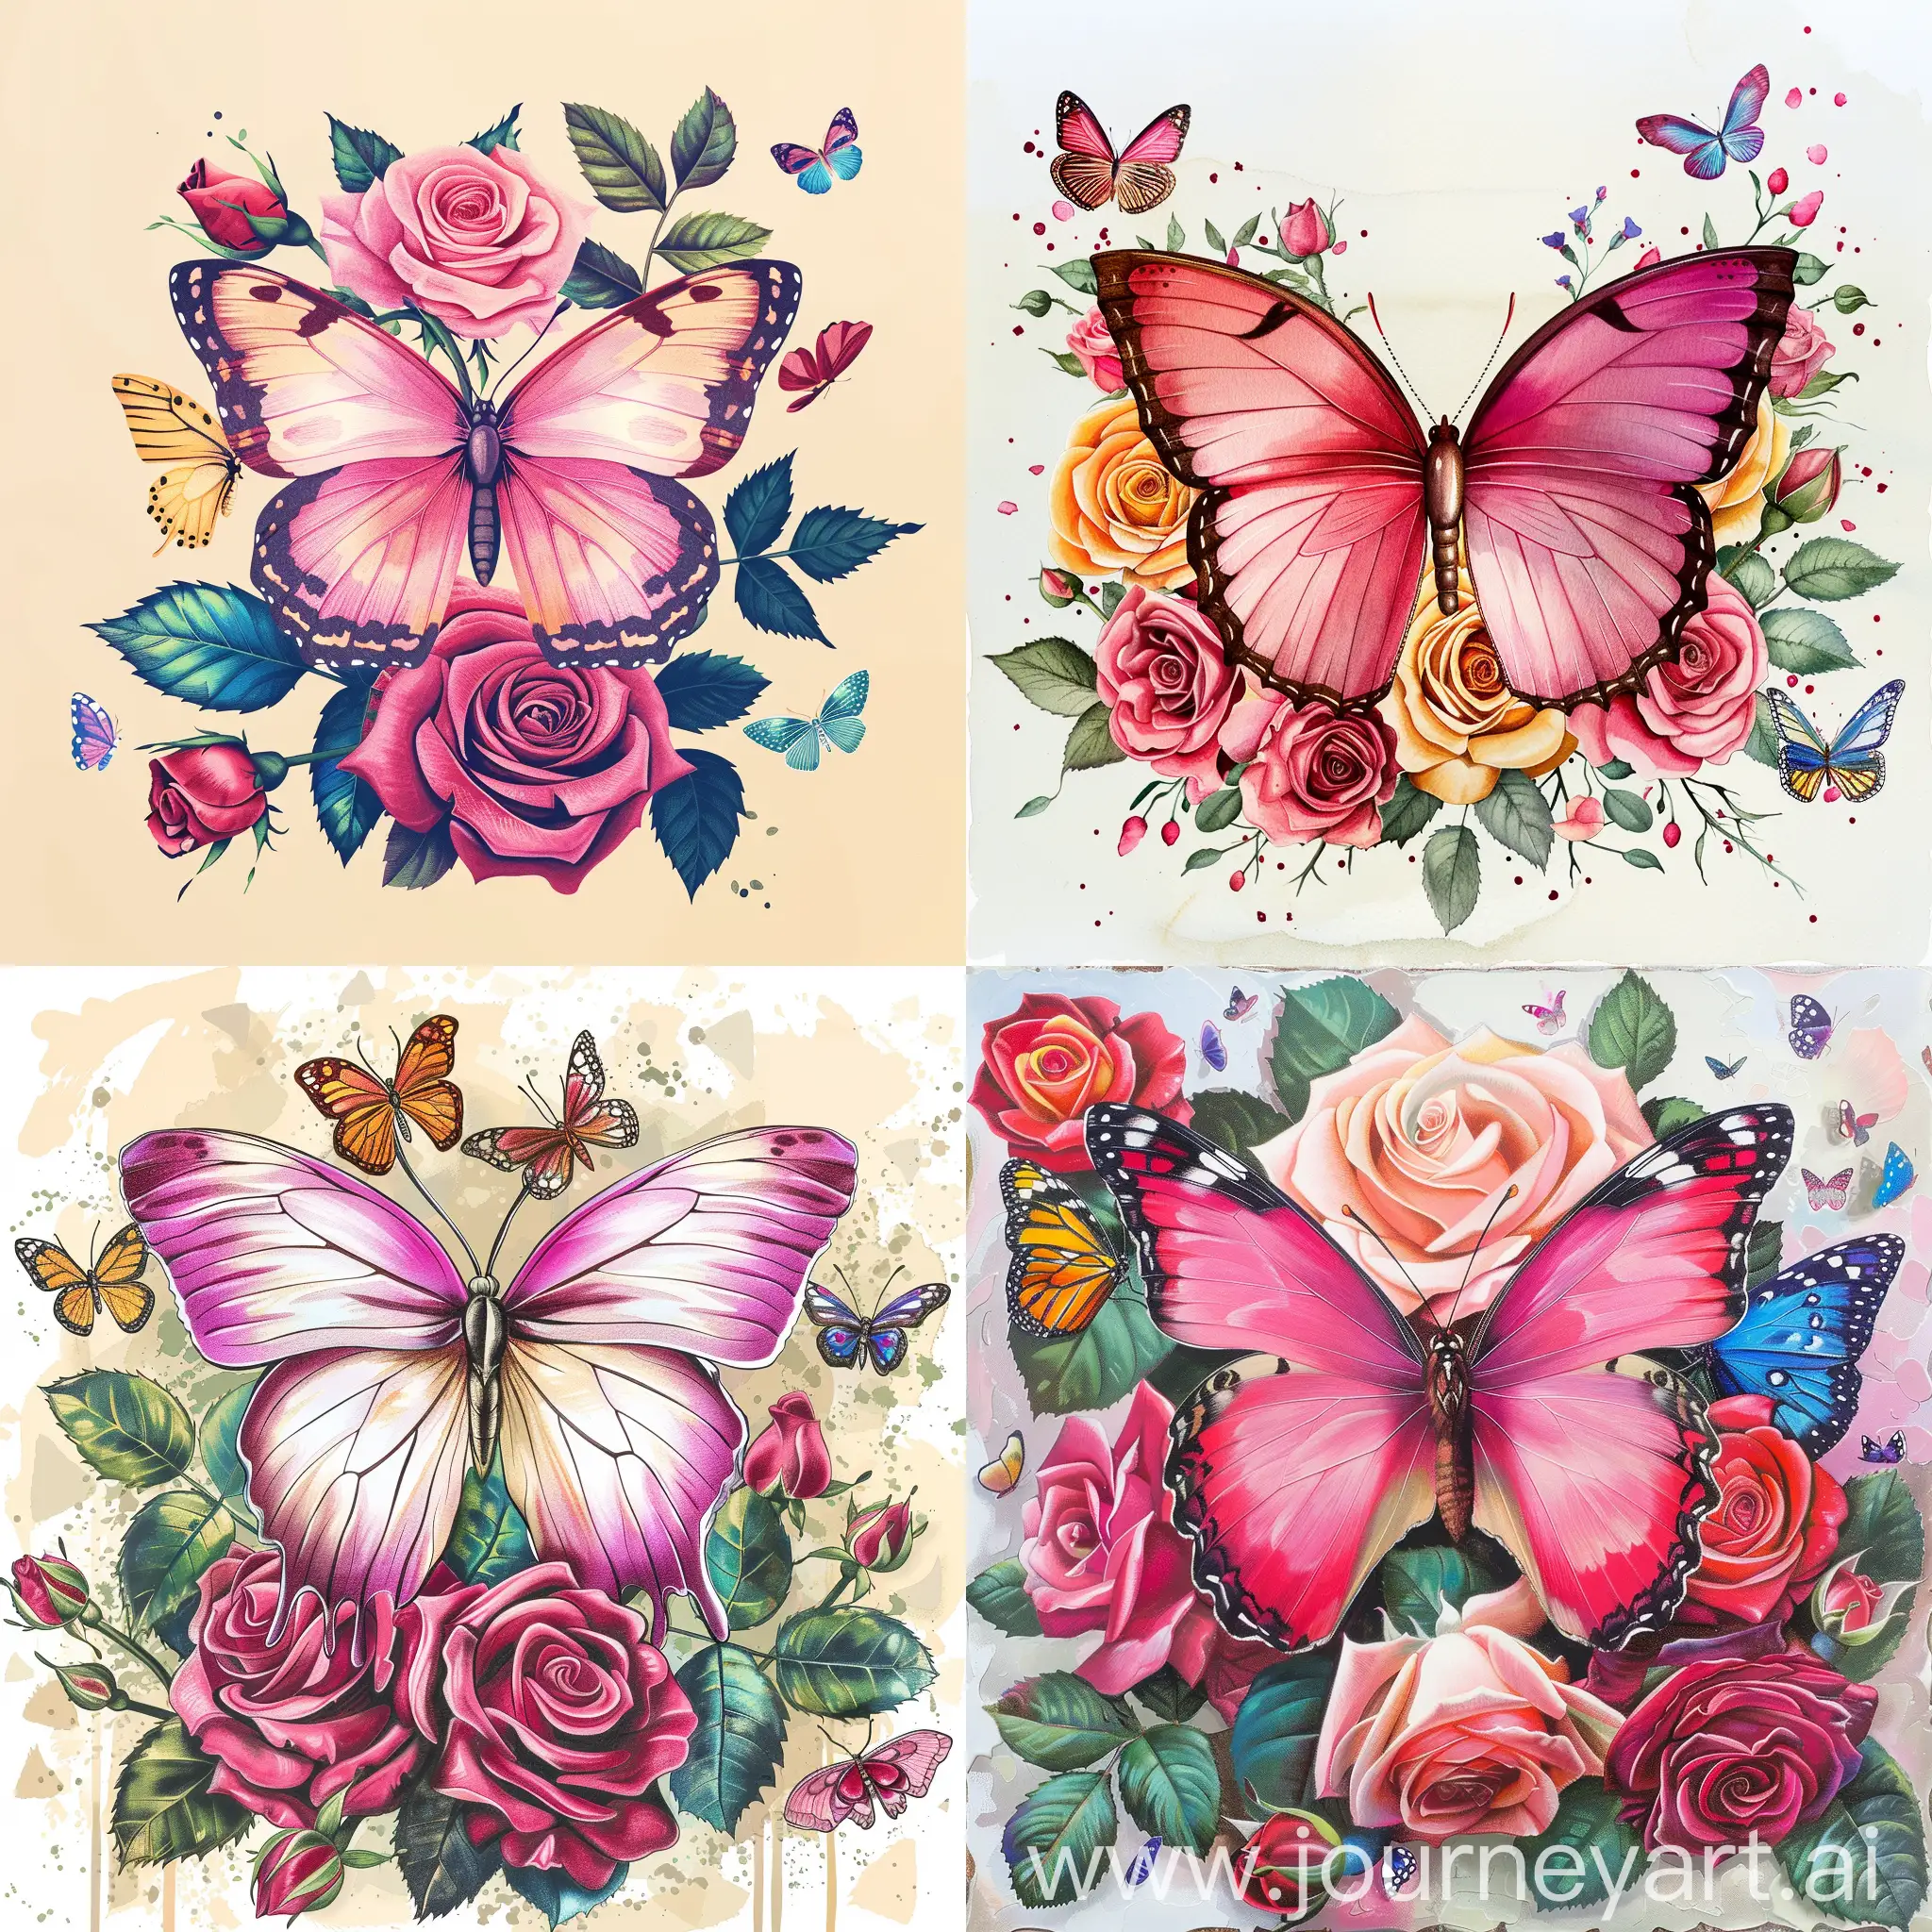 蝴蝶，粉红色，周边是蔷薇花，彩蝶纷飞，插画